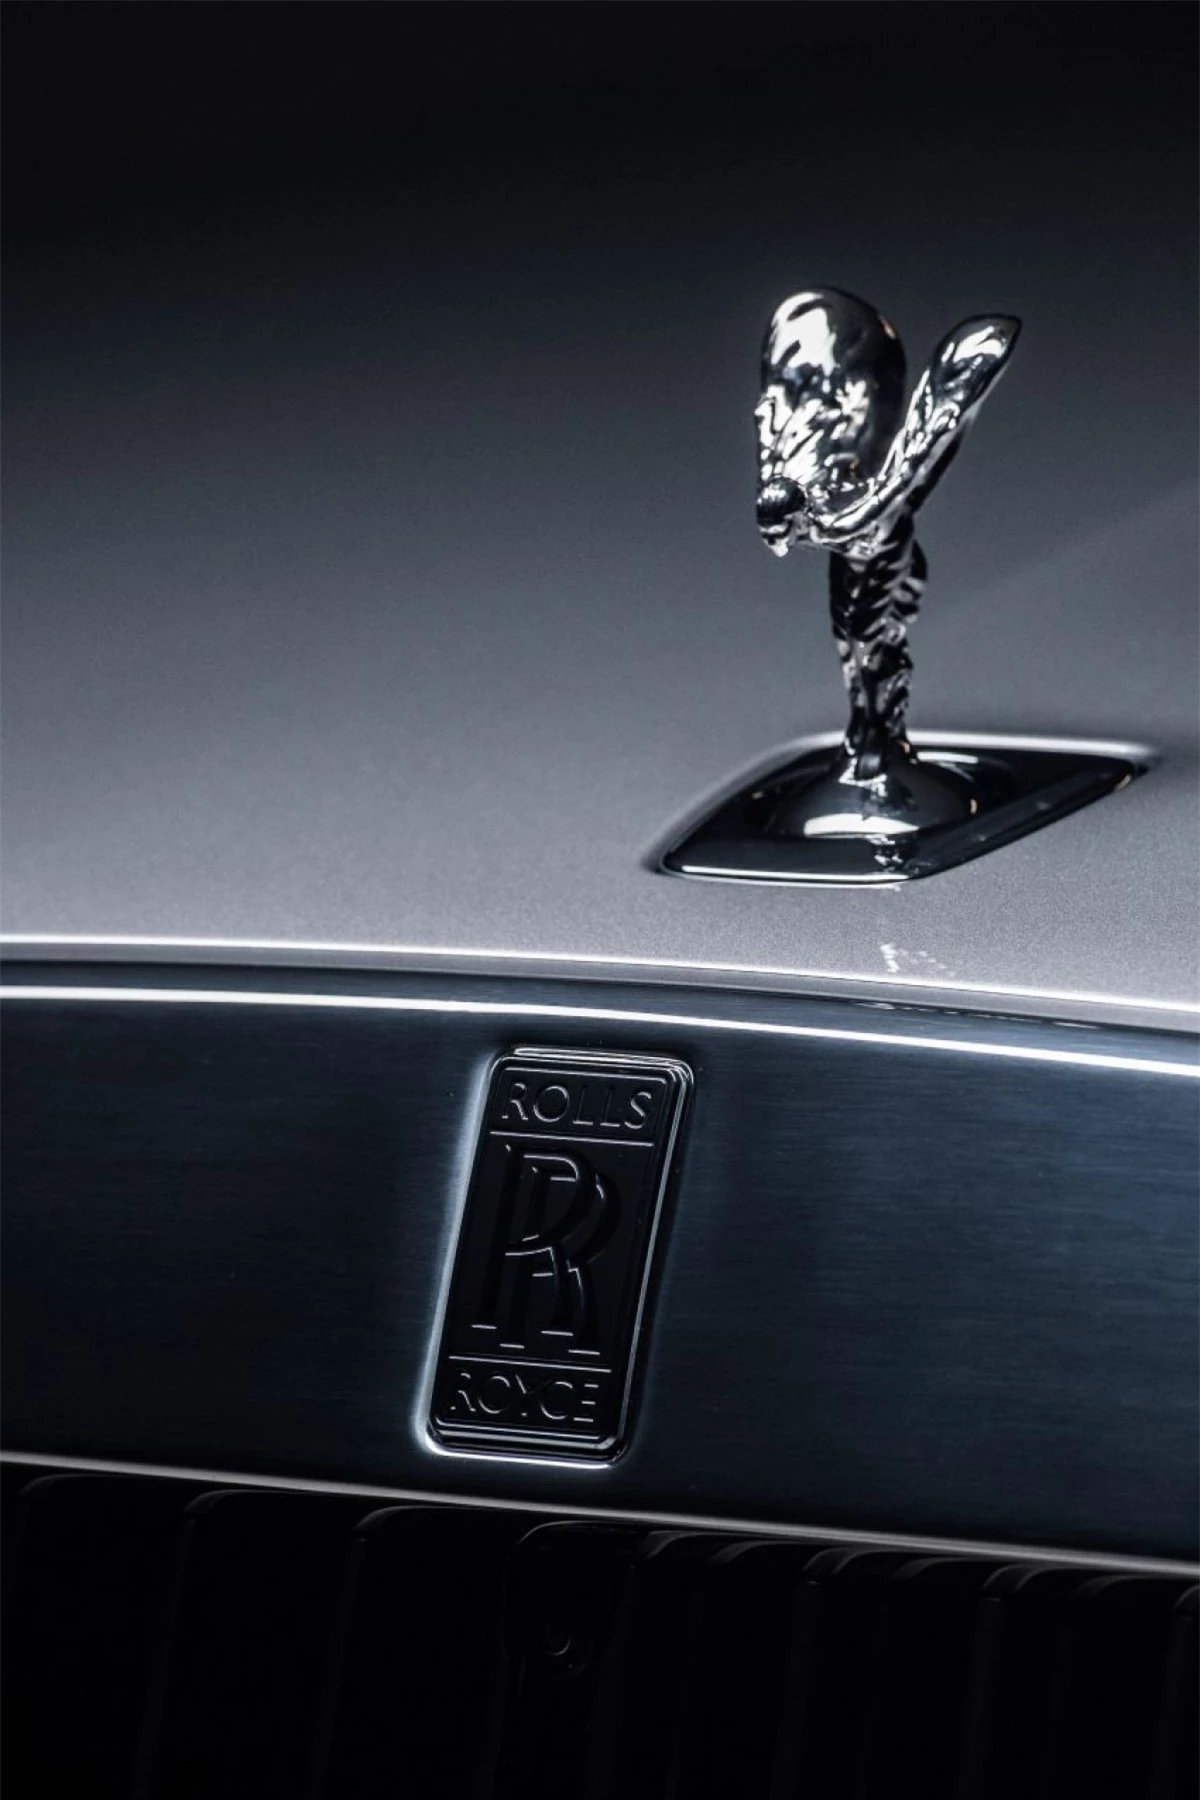 Với cách tiếp cận mới trong thiết kế, chiếc Ghost mới tuân theo triết lý “Post Opility” của thương hiệu, vừa tối giản mà vẫn mang nét đặc trưng của Rolls-Royce. Thoạt nhìn có vẻ quen thuộc khi mà chỉ có biểu tượng Spirit of Ecstasy phổ biến ở khắp mọi nơi và ô che cửa được nâng lên so với phiên bản trước đó.